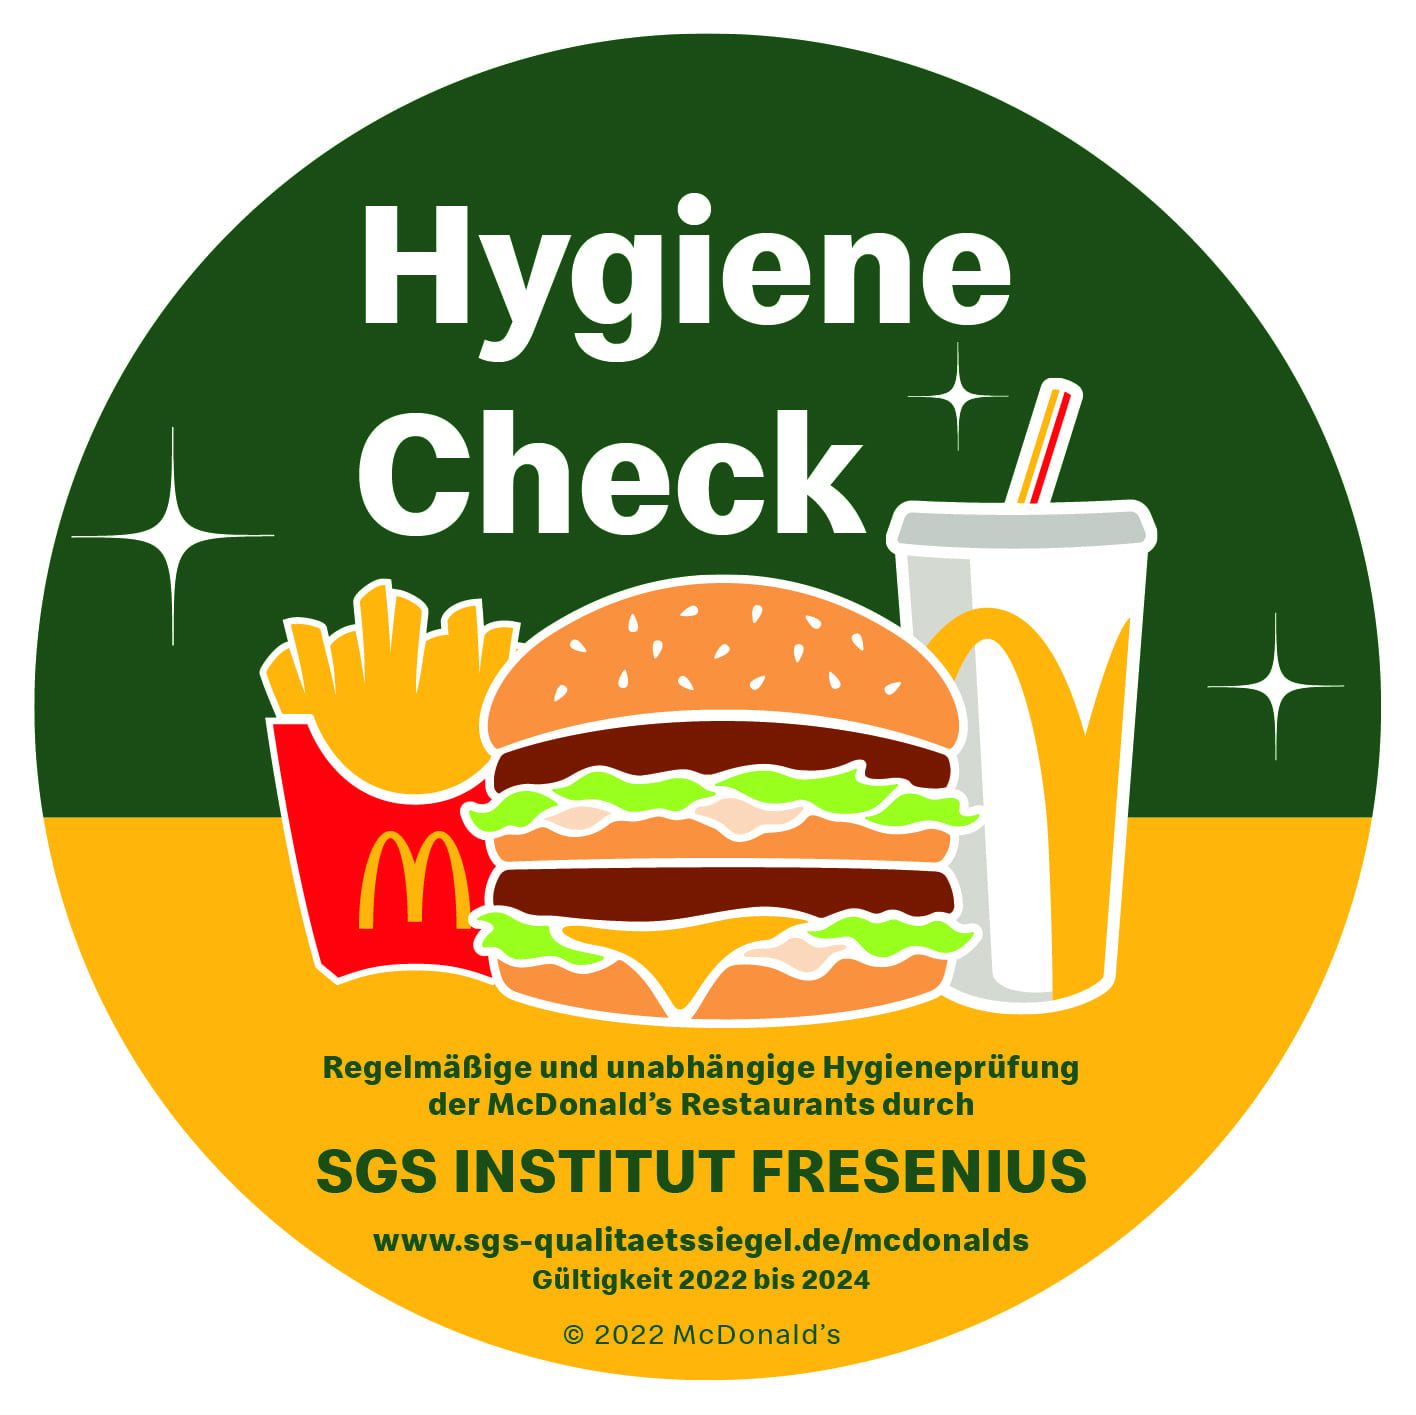 Sicher ist sicher: Hygienekontrollen durch SGS INSTITUT FRESENIUS in den McDonald’s Restaurants